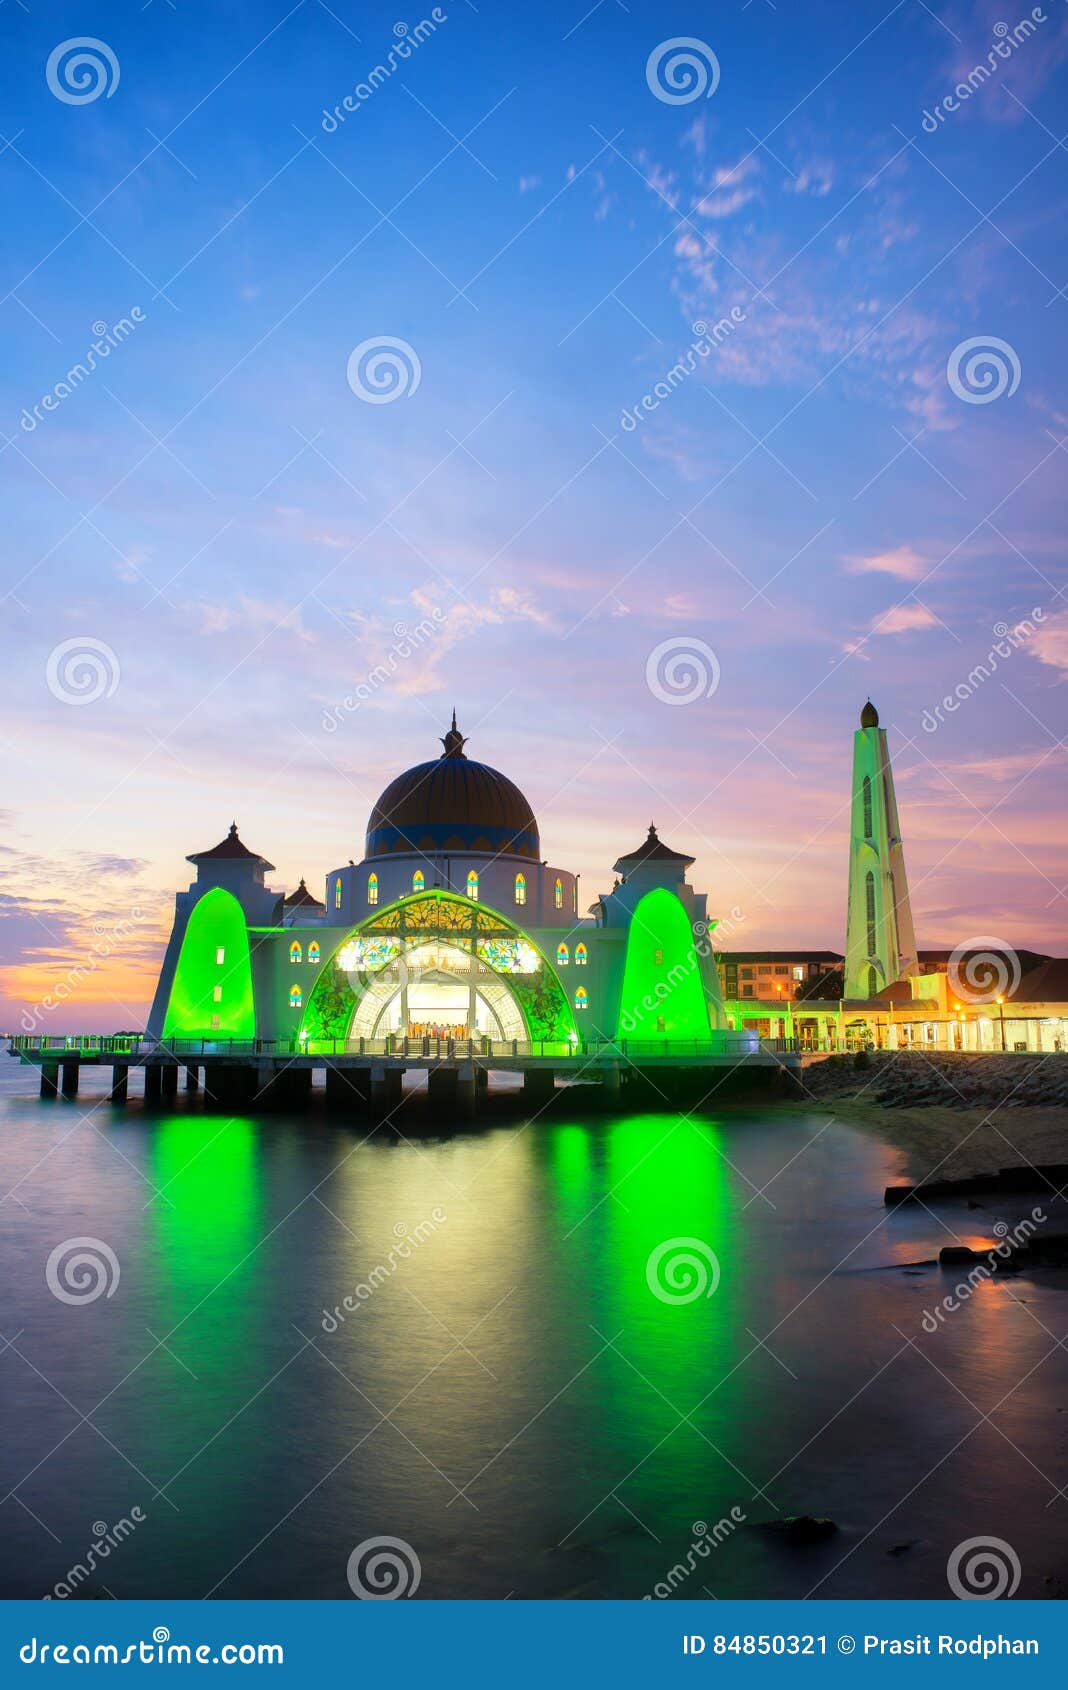 malacca islam mosque is beutiful islam mosque in malacca, malays